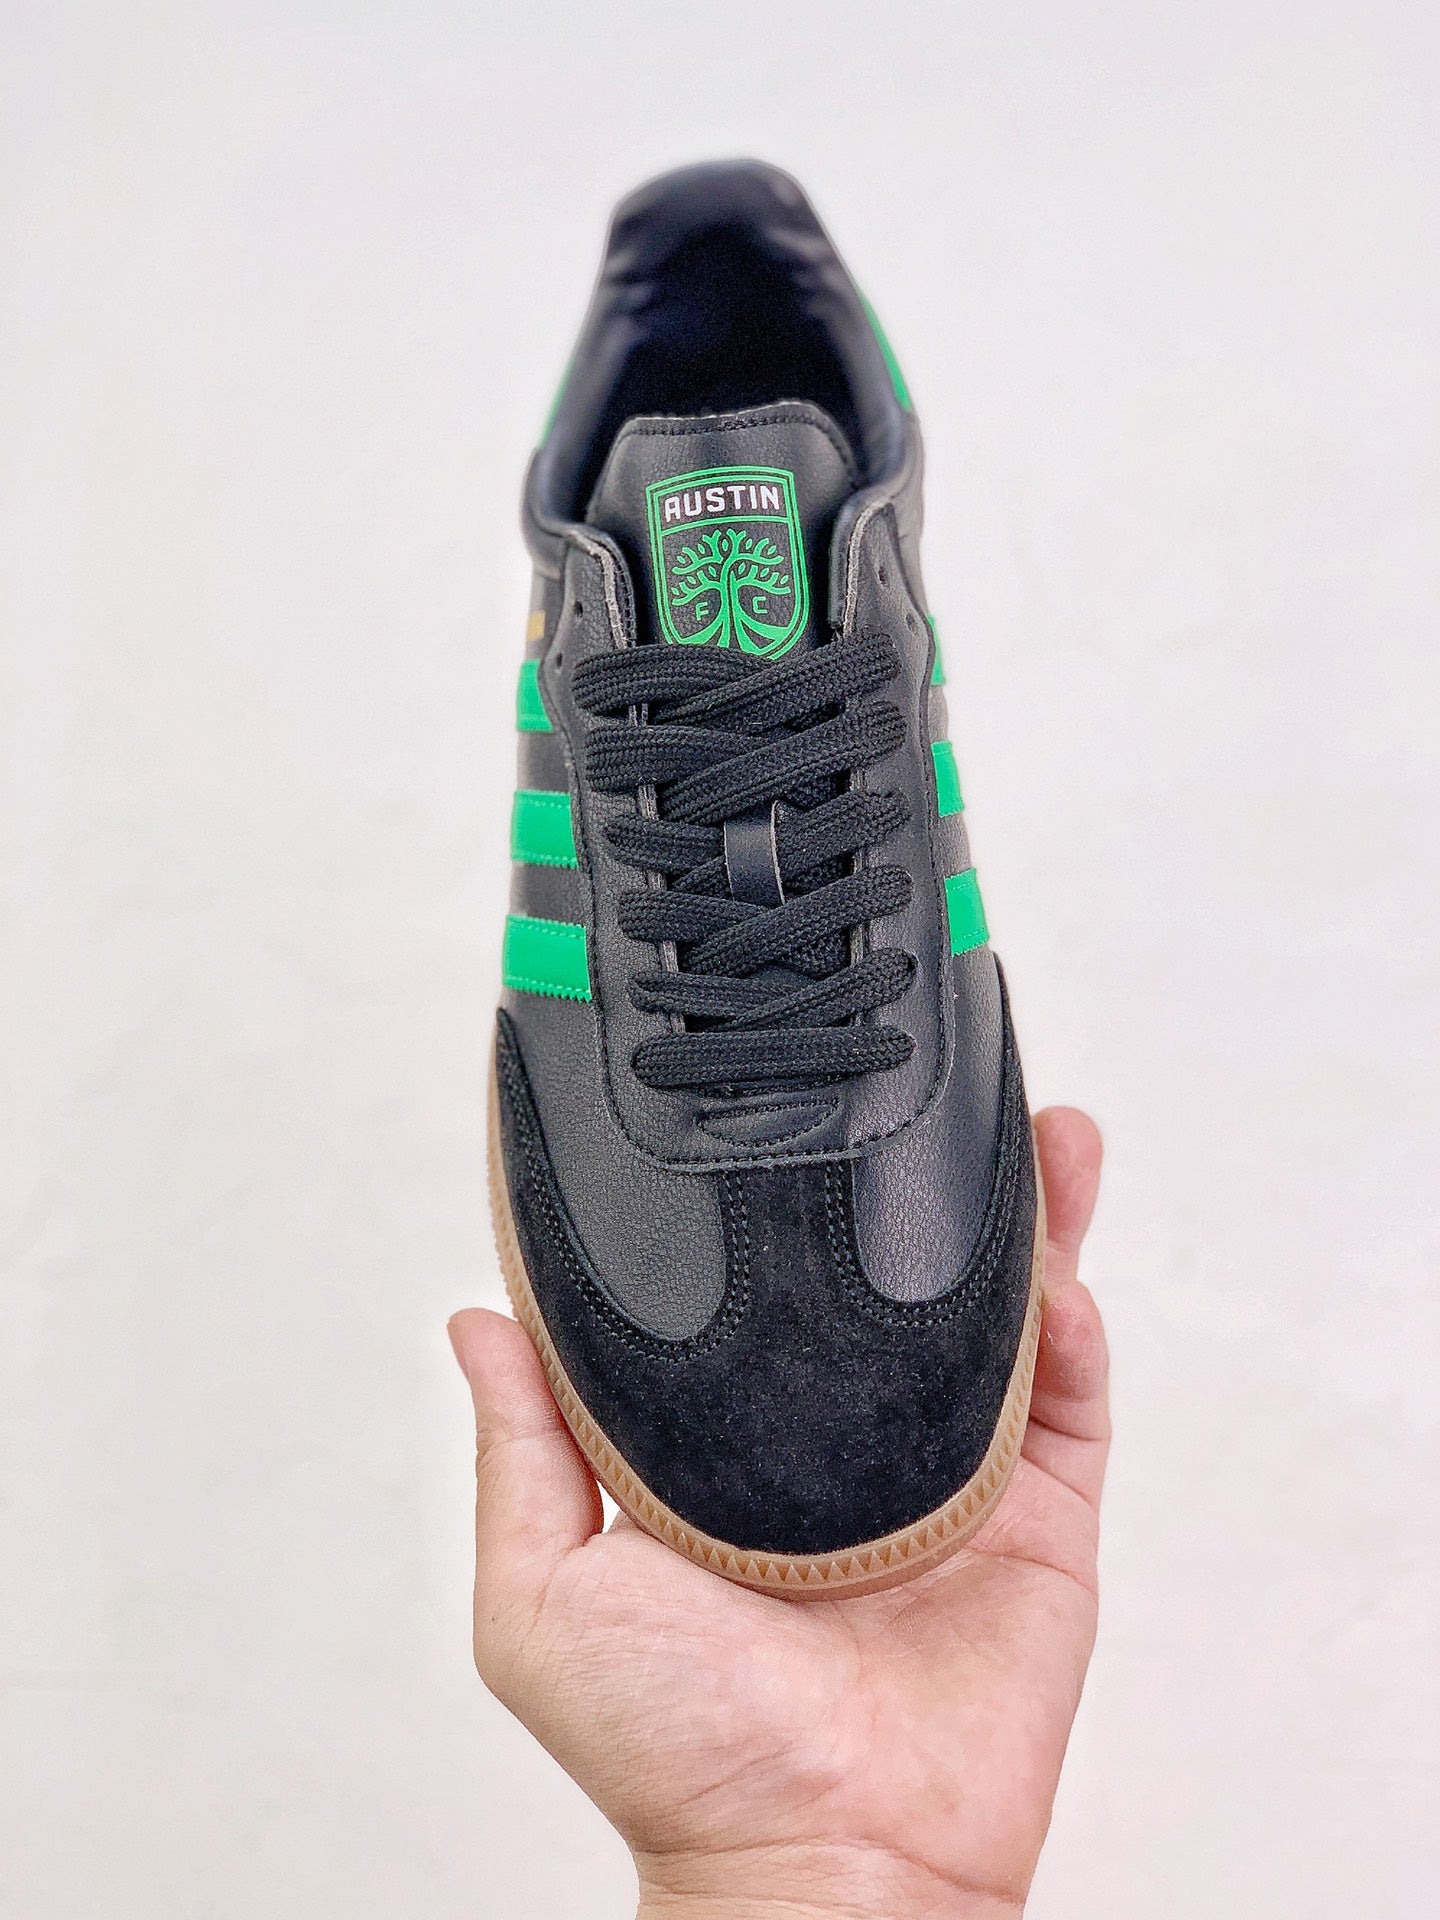 Adidas samba green black shoes